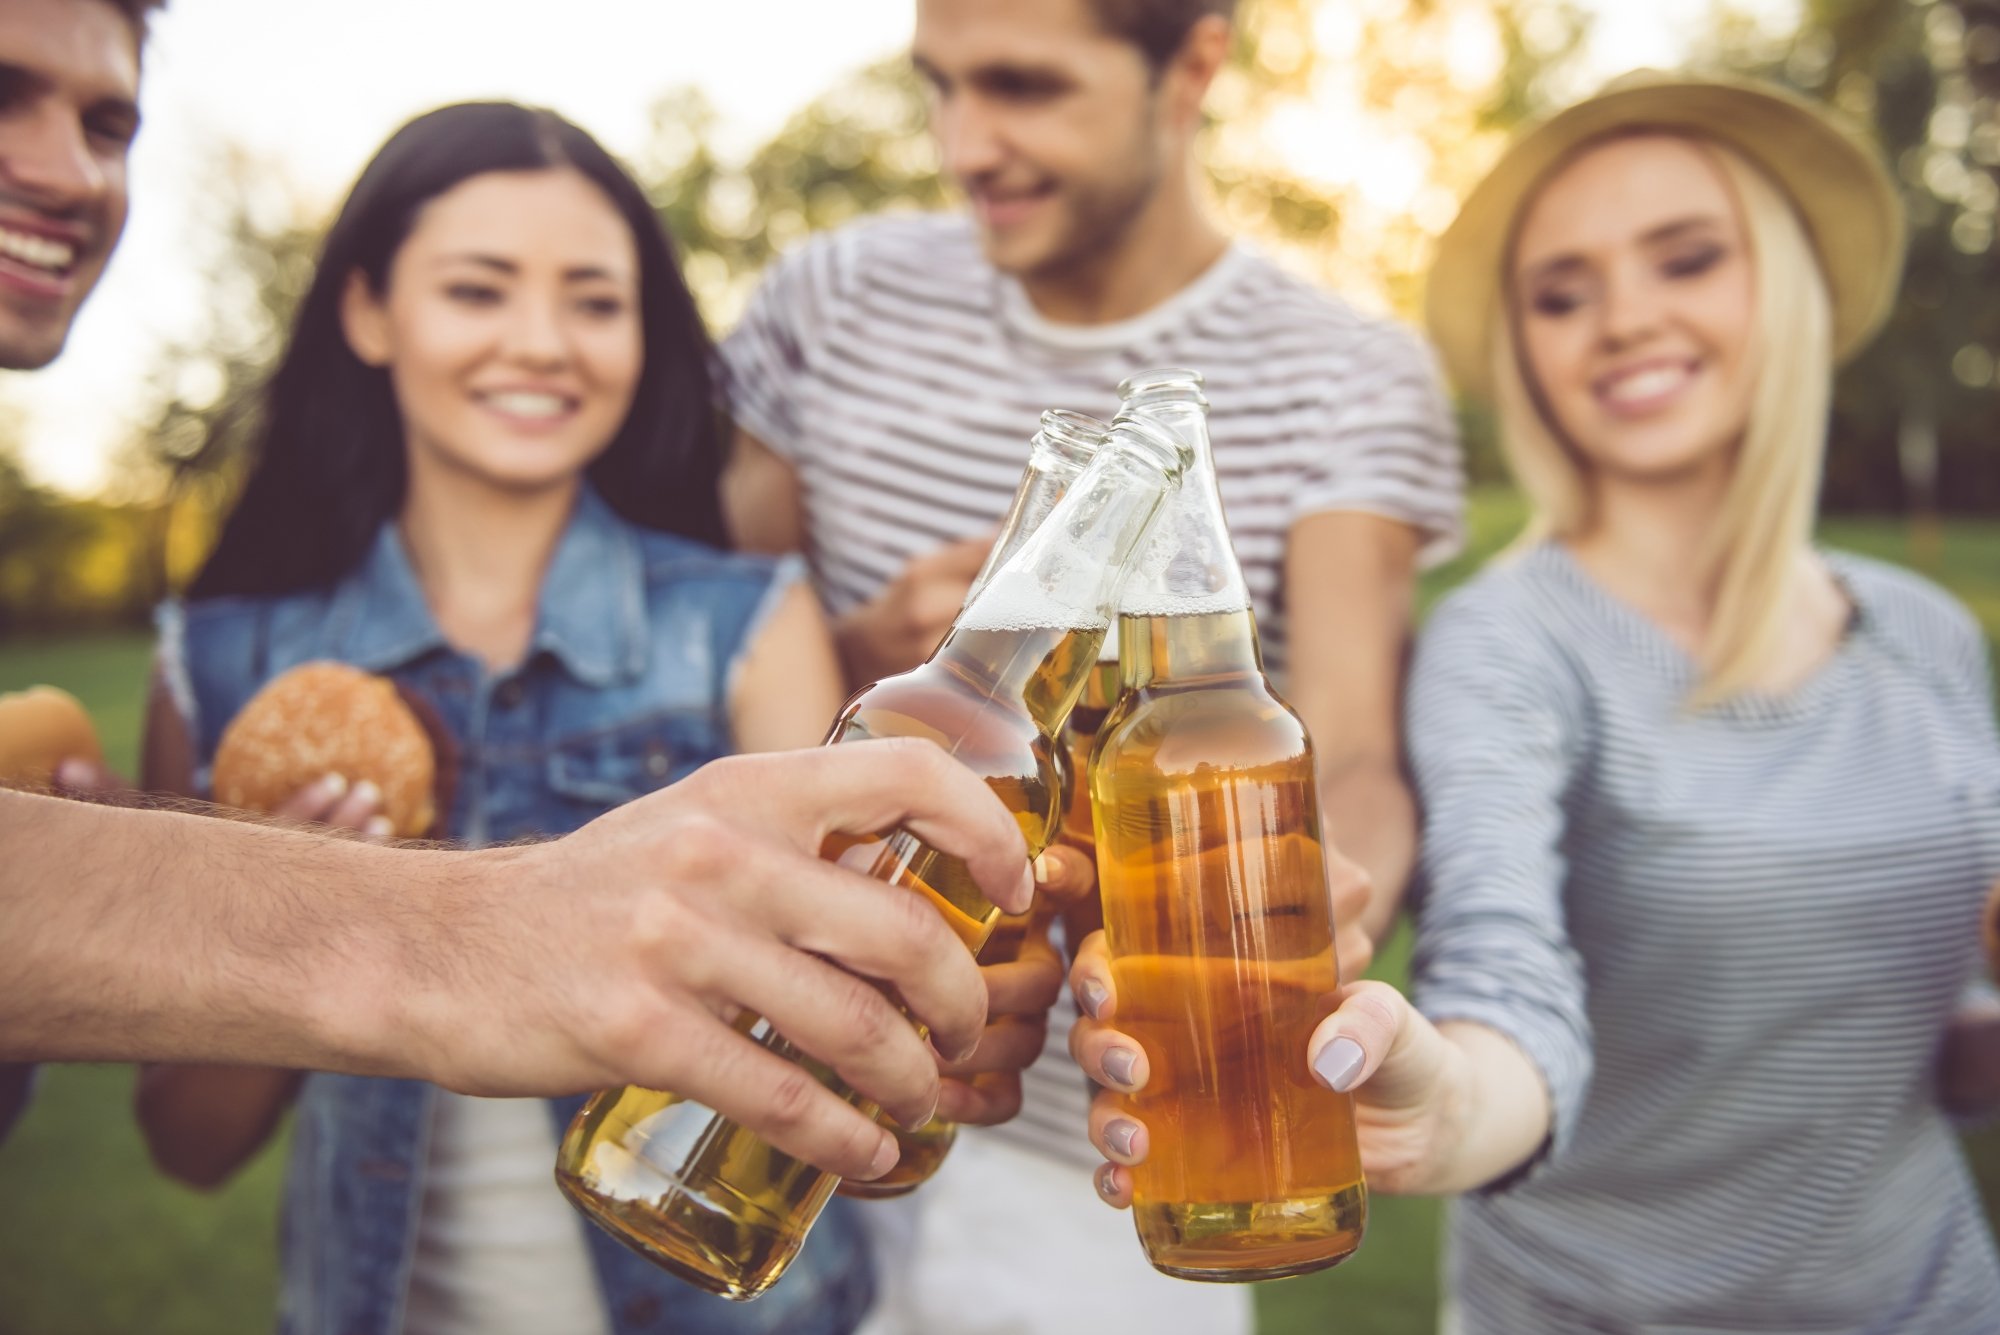 Découvrez le Hard Cider, boisson tendance des festivals d'été et